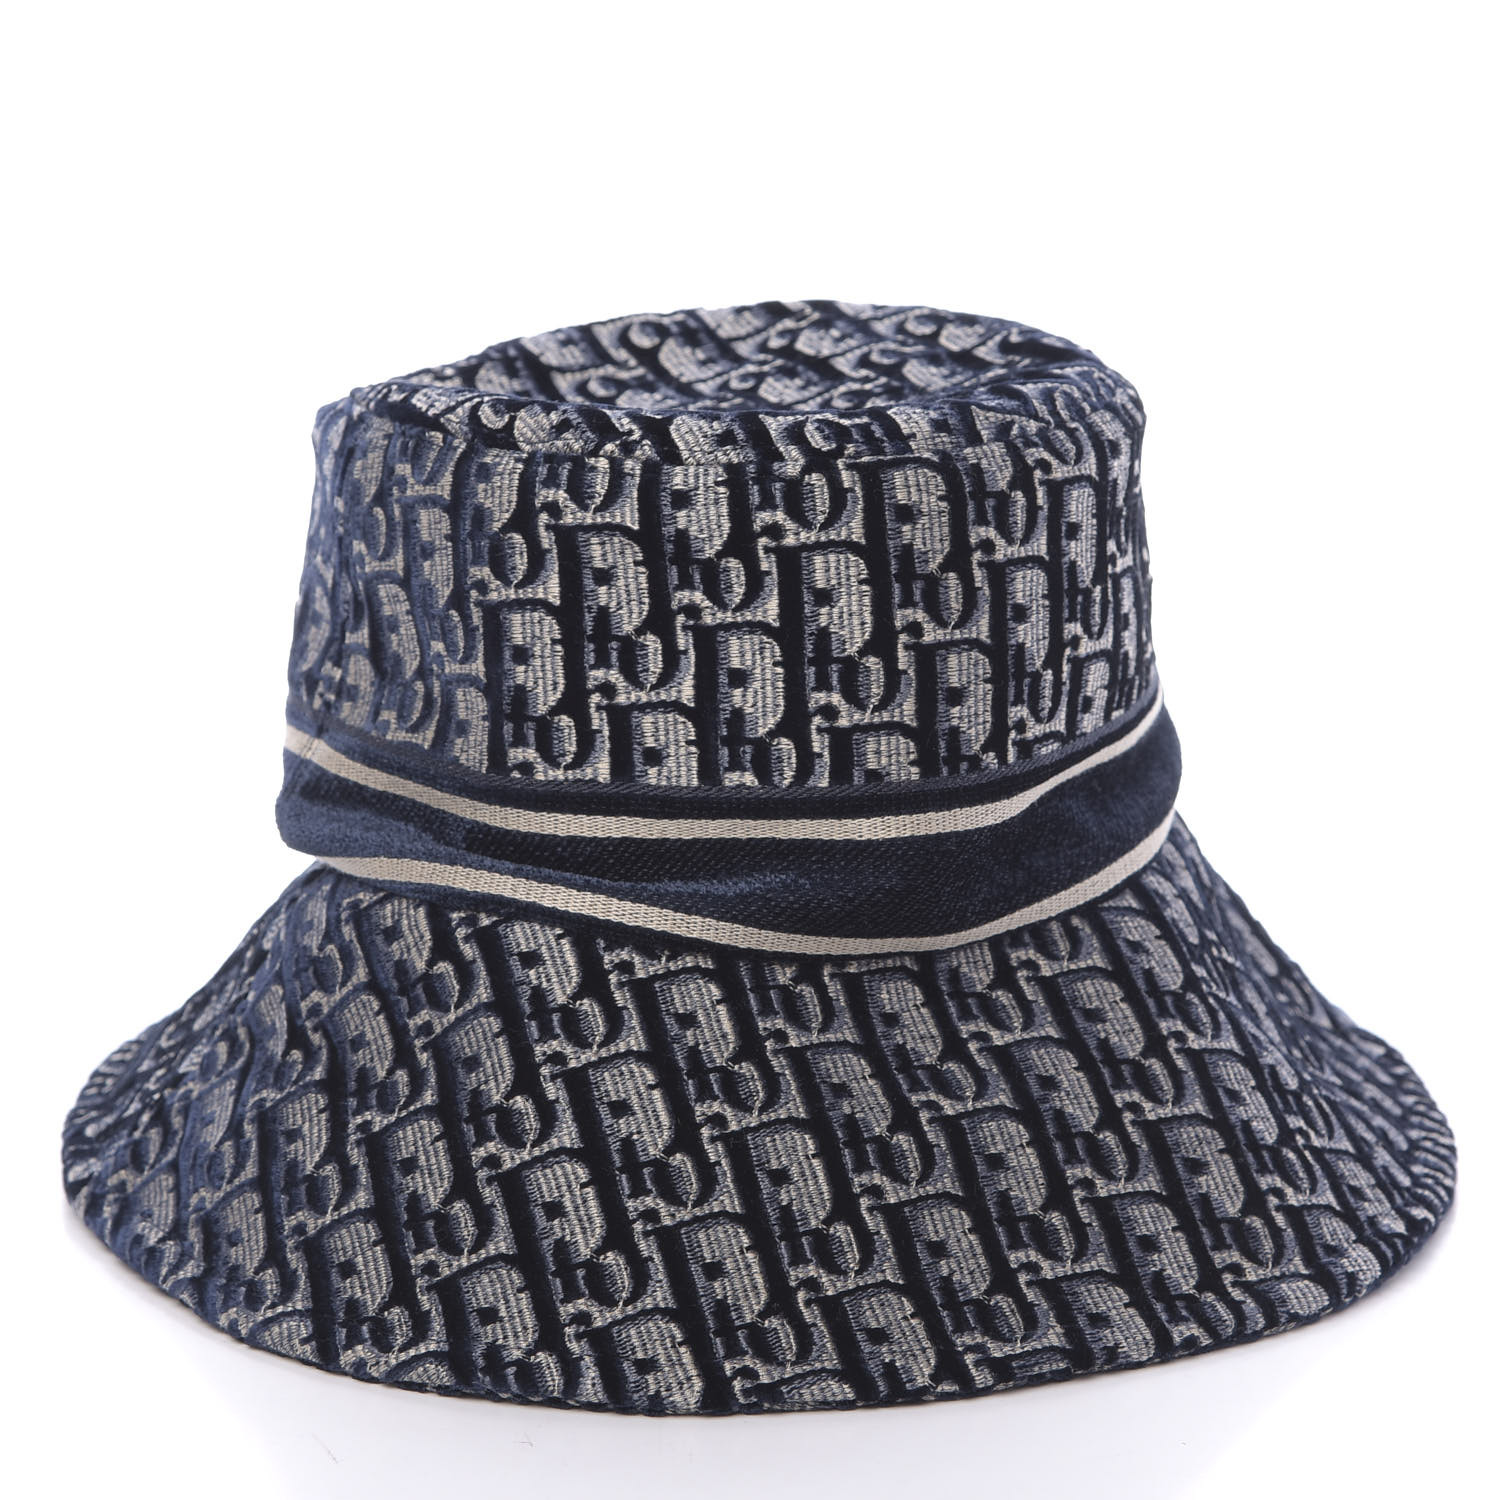 CHRISTIAN DIOR Velvet Oblique Large Brim Bucket Hat 58 Bleu Marine ...